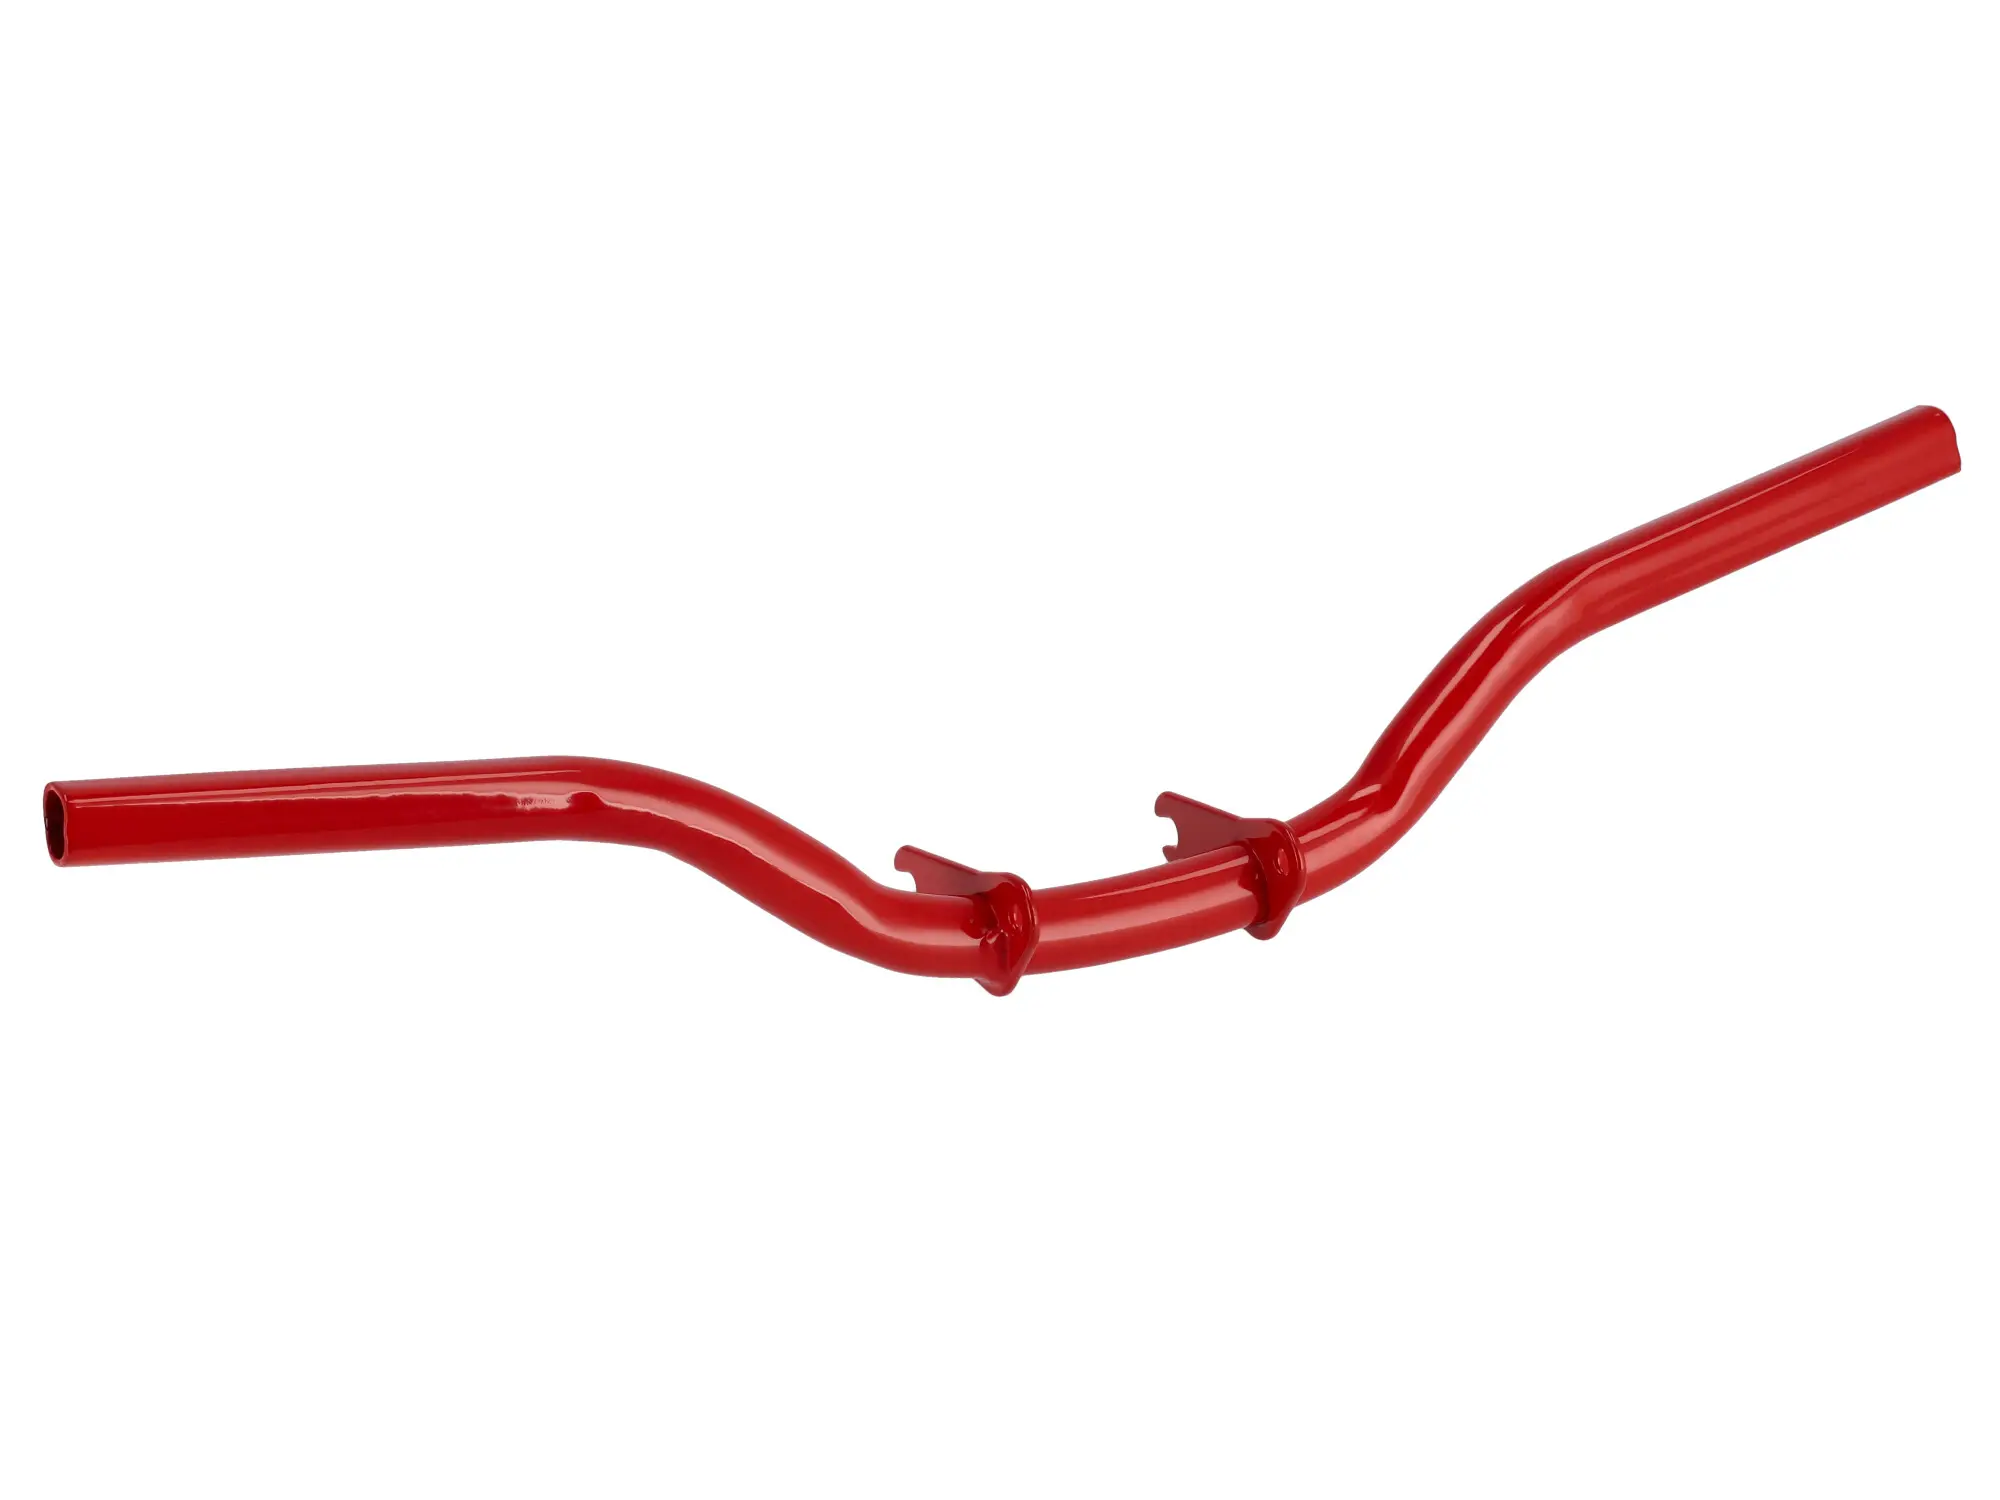 Fußrastenträger Enduro, rechts verlängert, grundiert + Rot beschichtet - Simson S50, S51, S70, Art.-Nr.: 10075899 - Bild 1